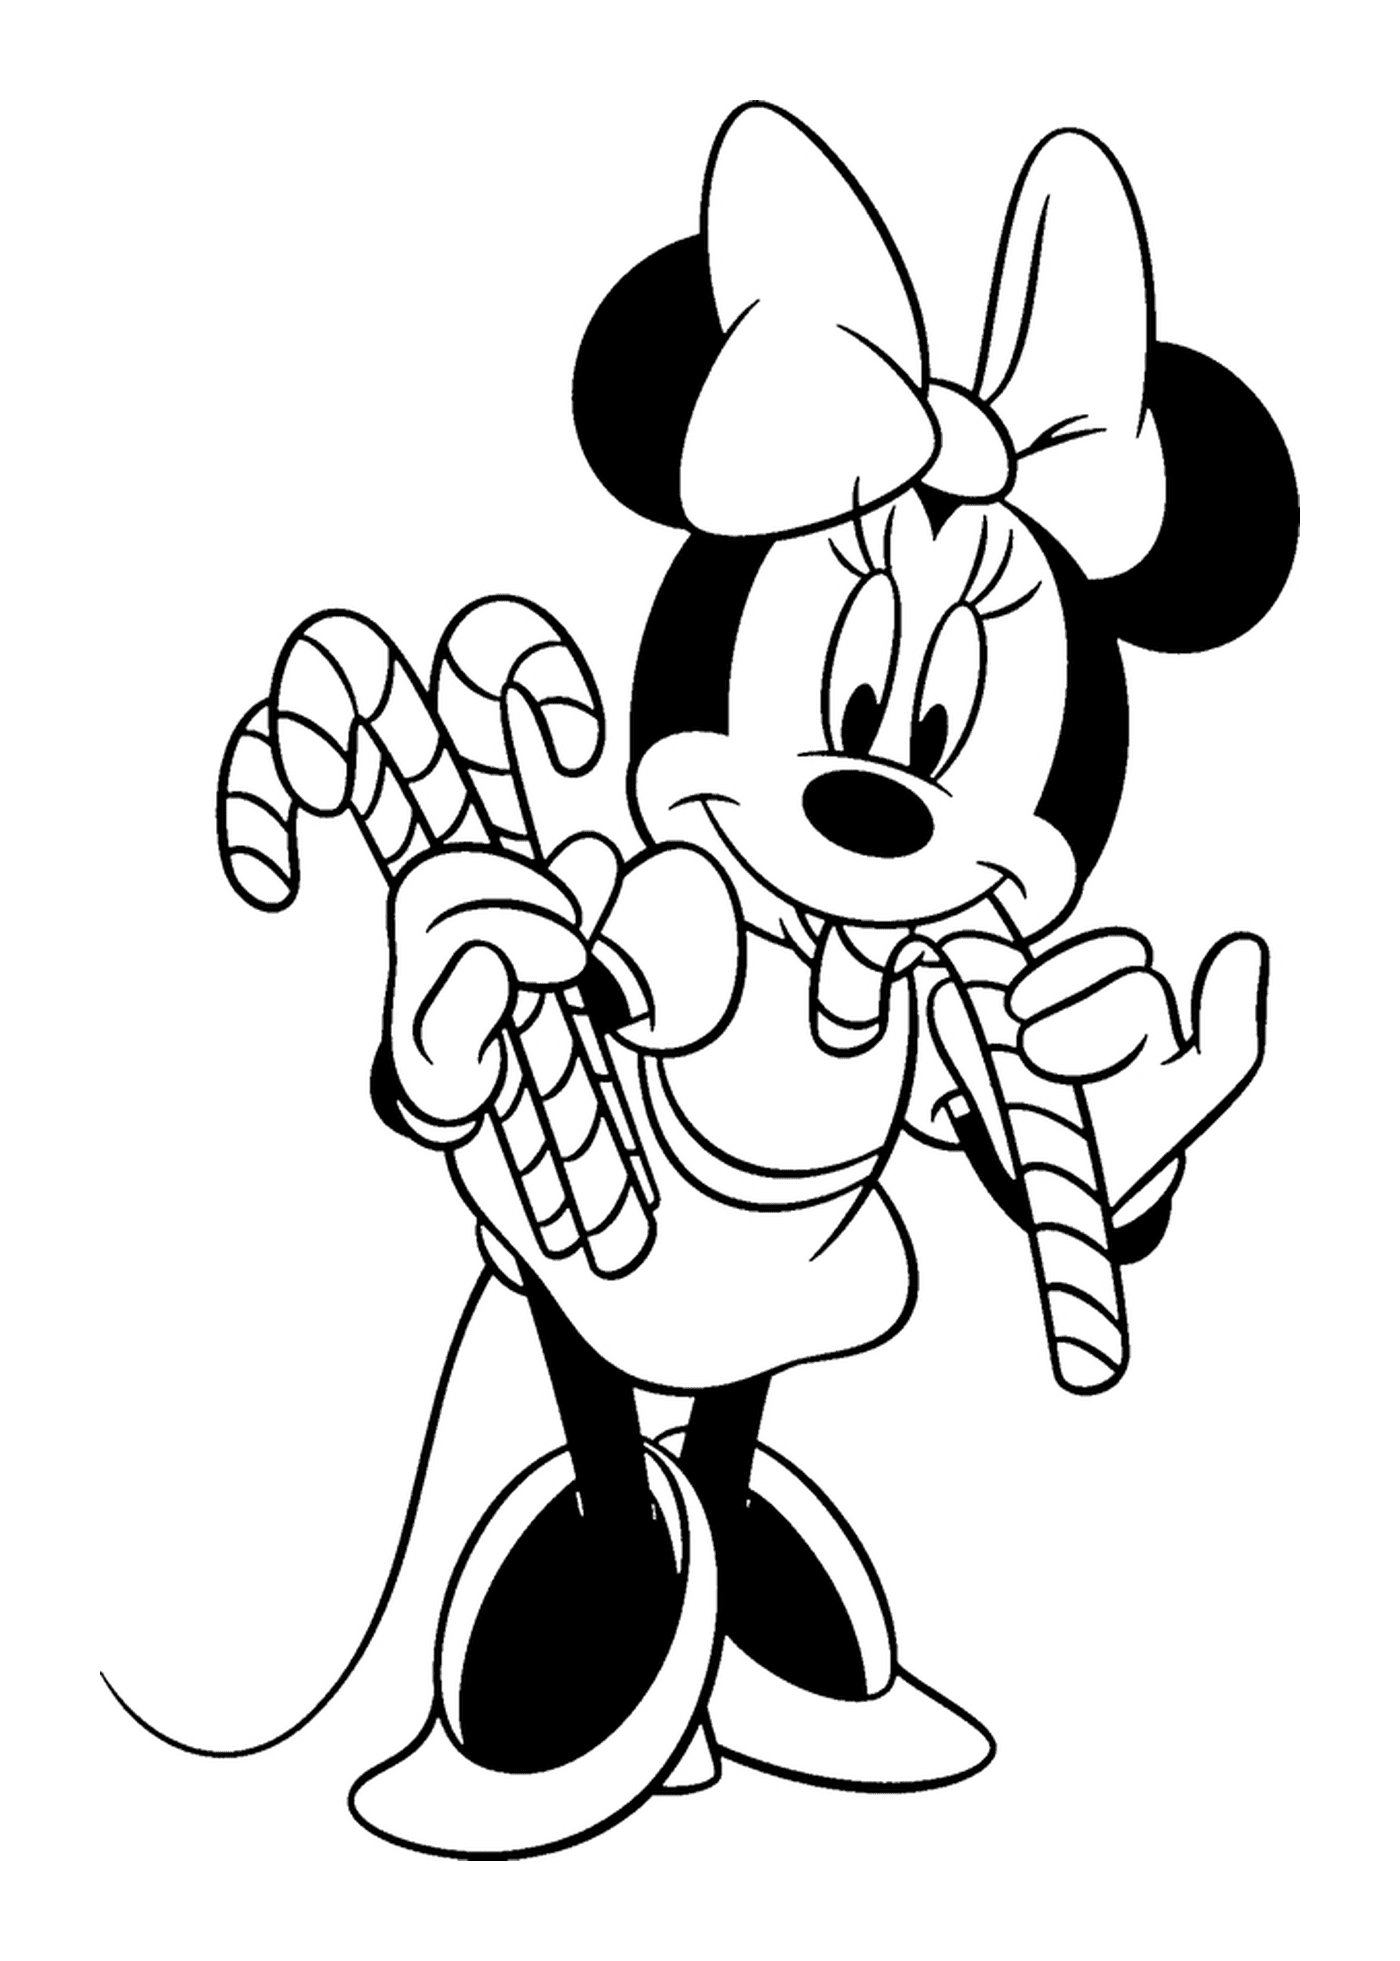   Minnie tient des cannes de bonbon 